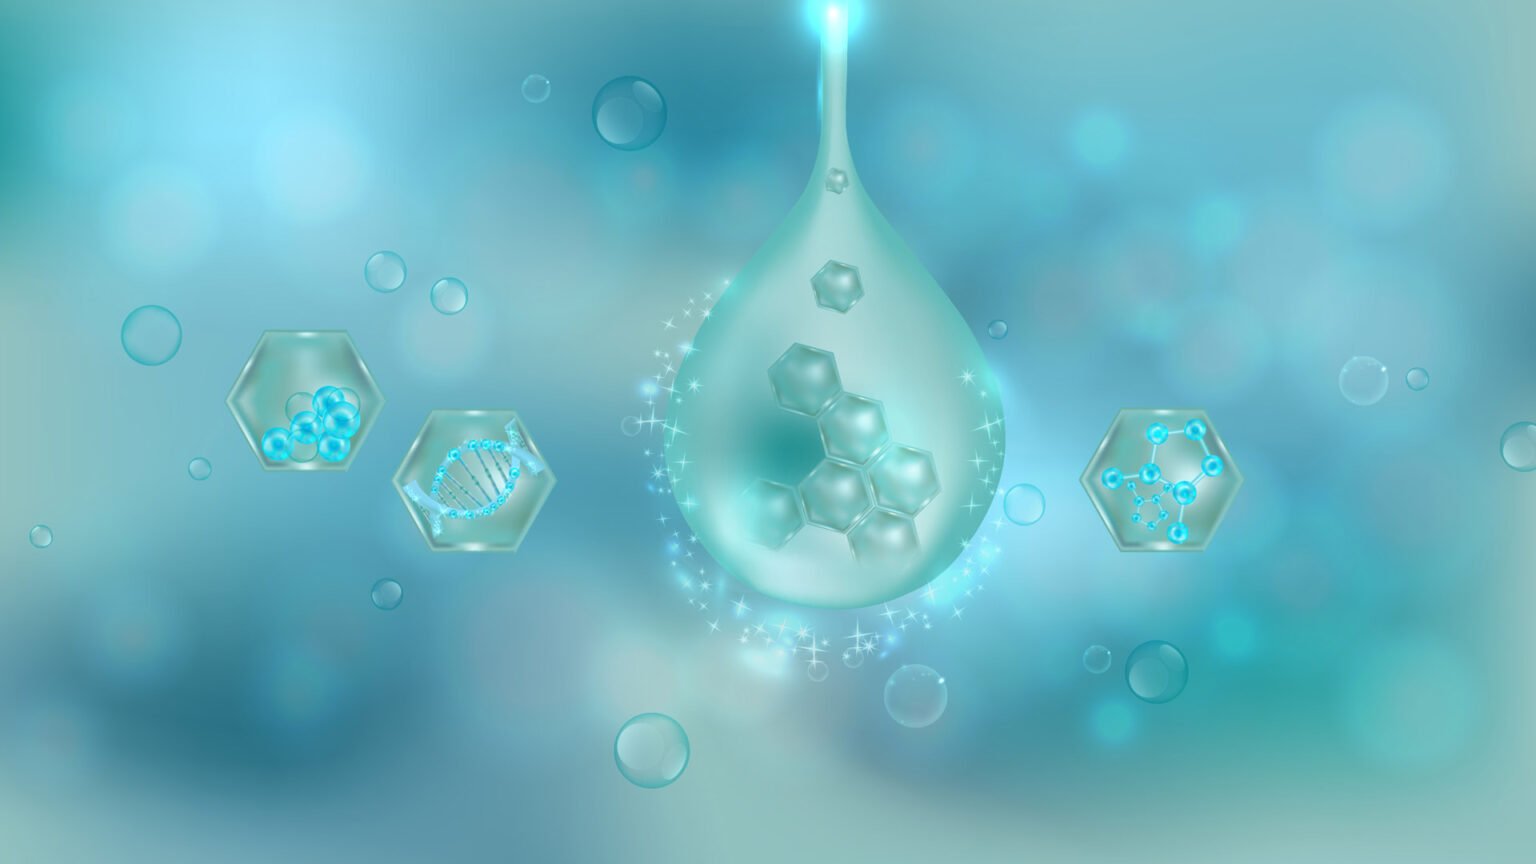 Elementos moleculares de color turquesa brillantes flotando en un paisaje onírico purificado.